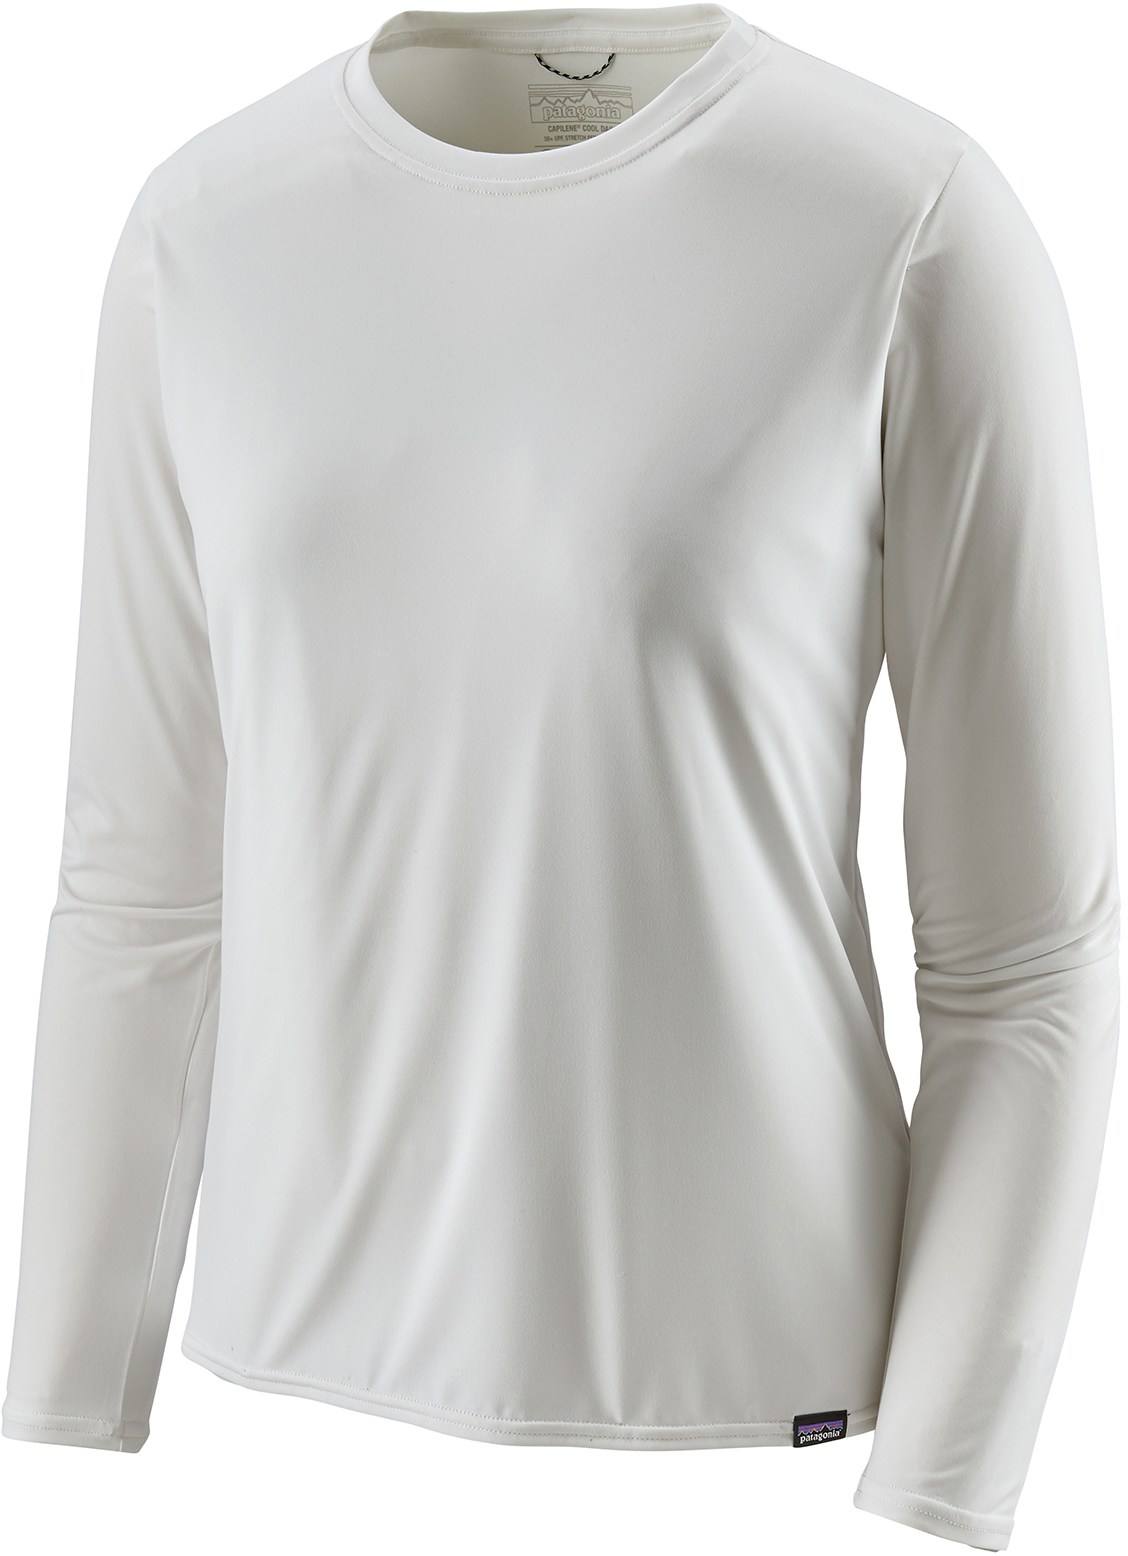 Повседневная рубашка Capilene Cool с длинными рукавами — женская Patagonia, белый повседневная рубашка с длинными рукавами capilene cool – мужская patagonia цвет feather grey